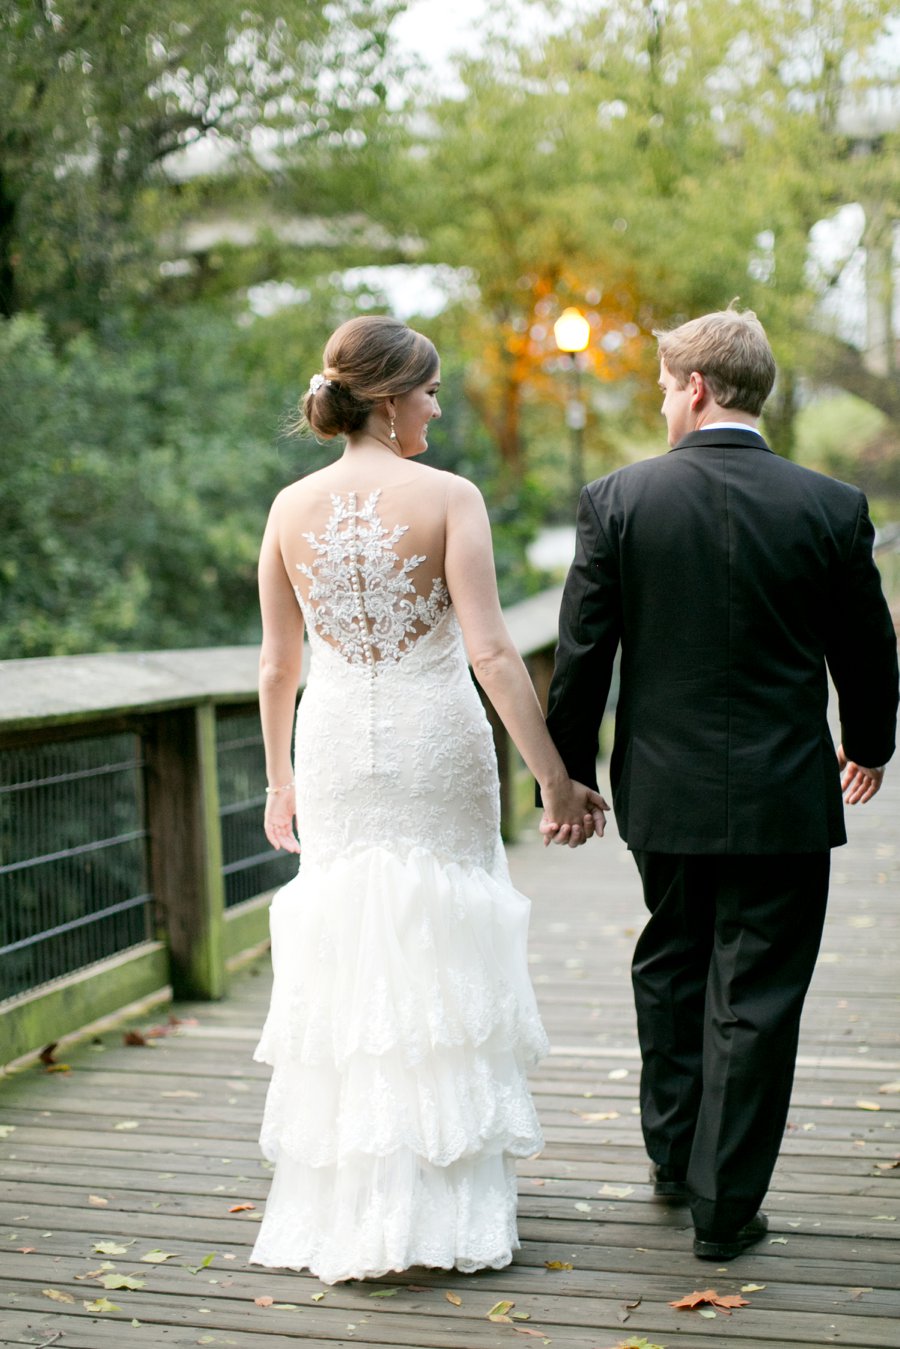 A Charming Blue & White South Carolina Wedding via TheELD.com